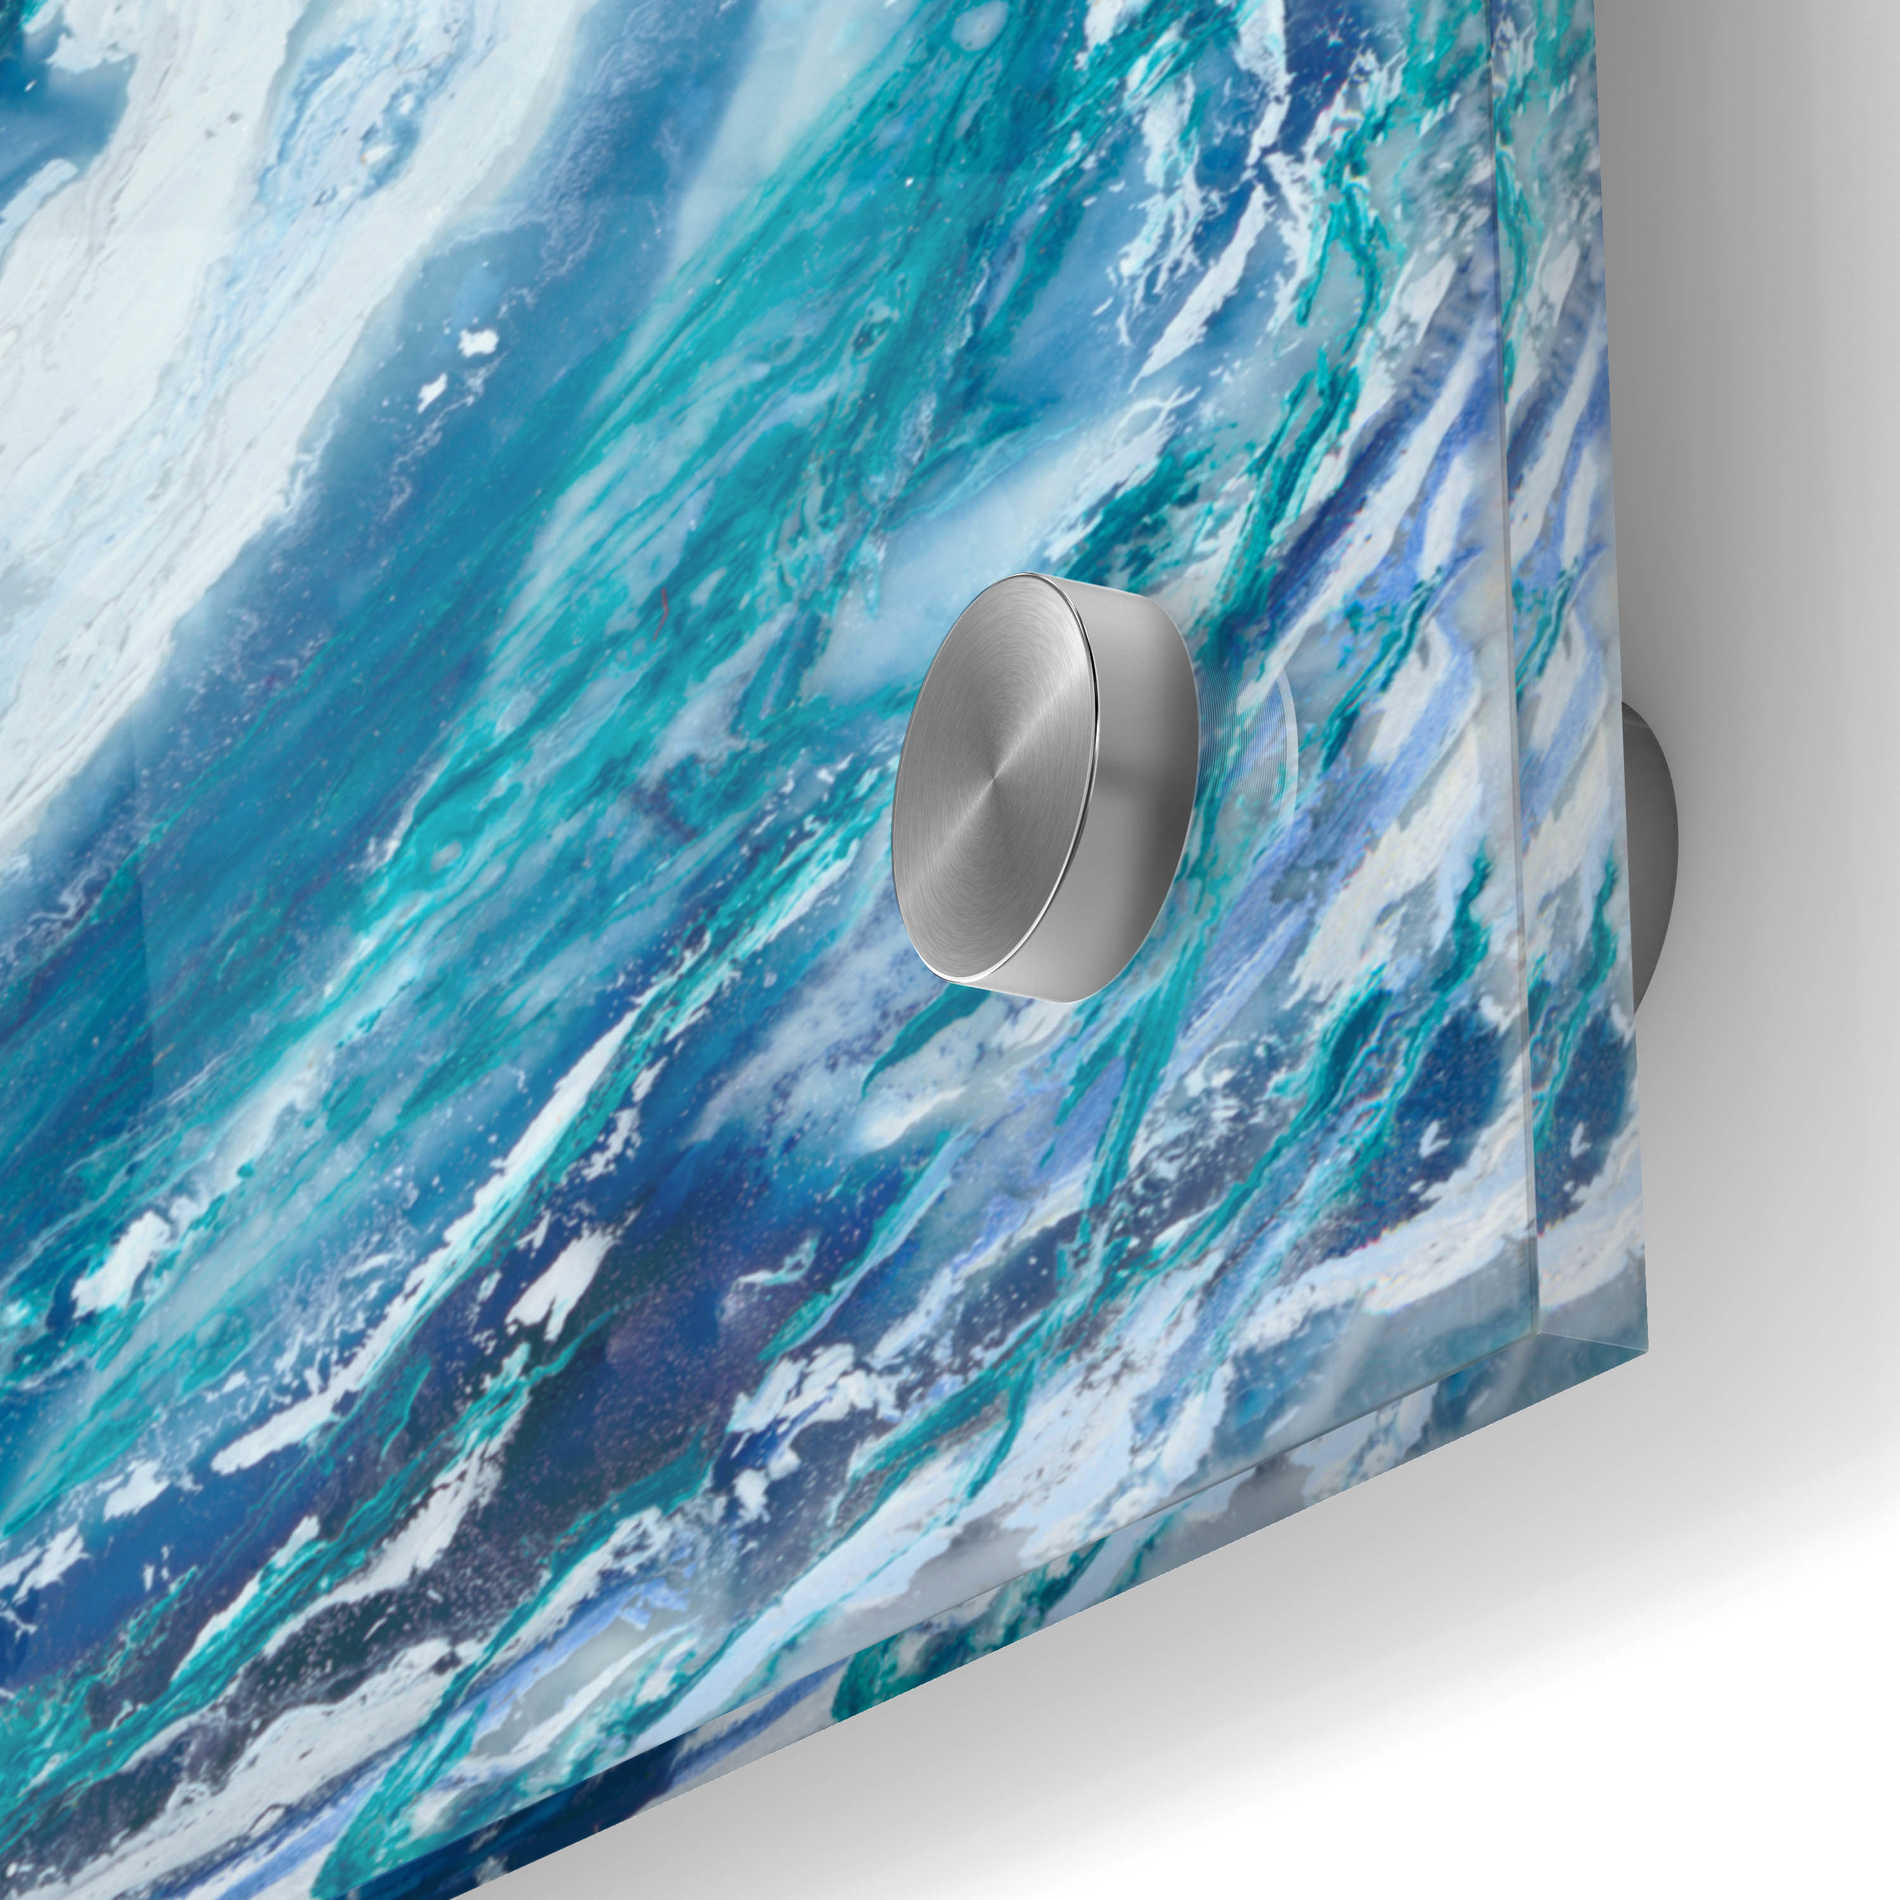 Epic Art 'Ocean Eye II' by Renee W Stramel, Acrylic Glass Wall Art,24x24